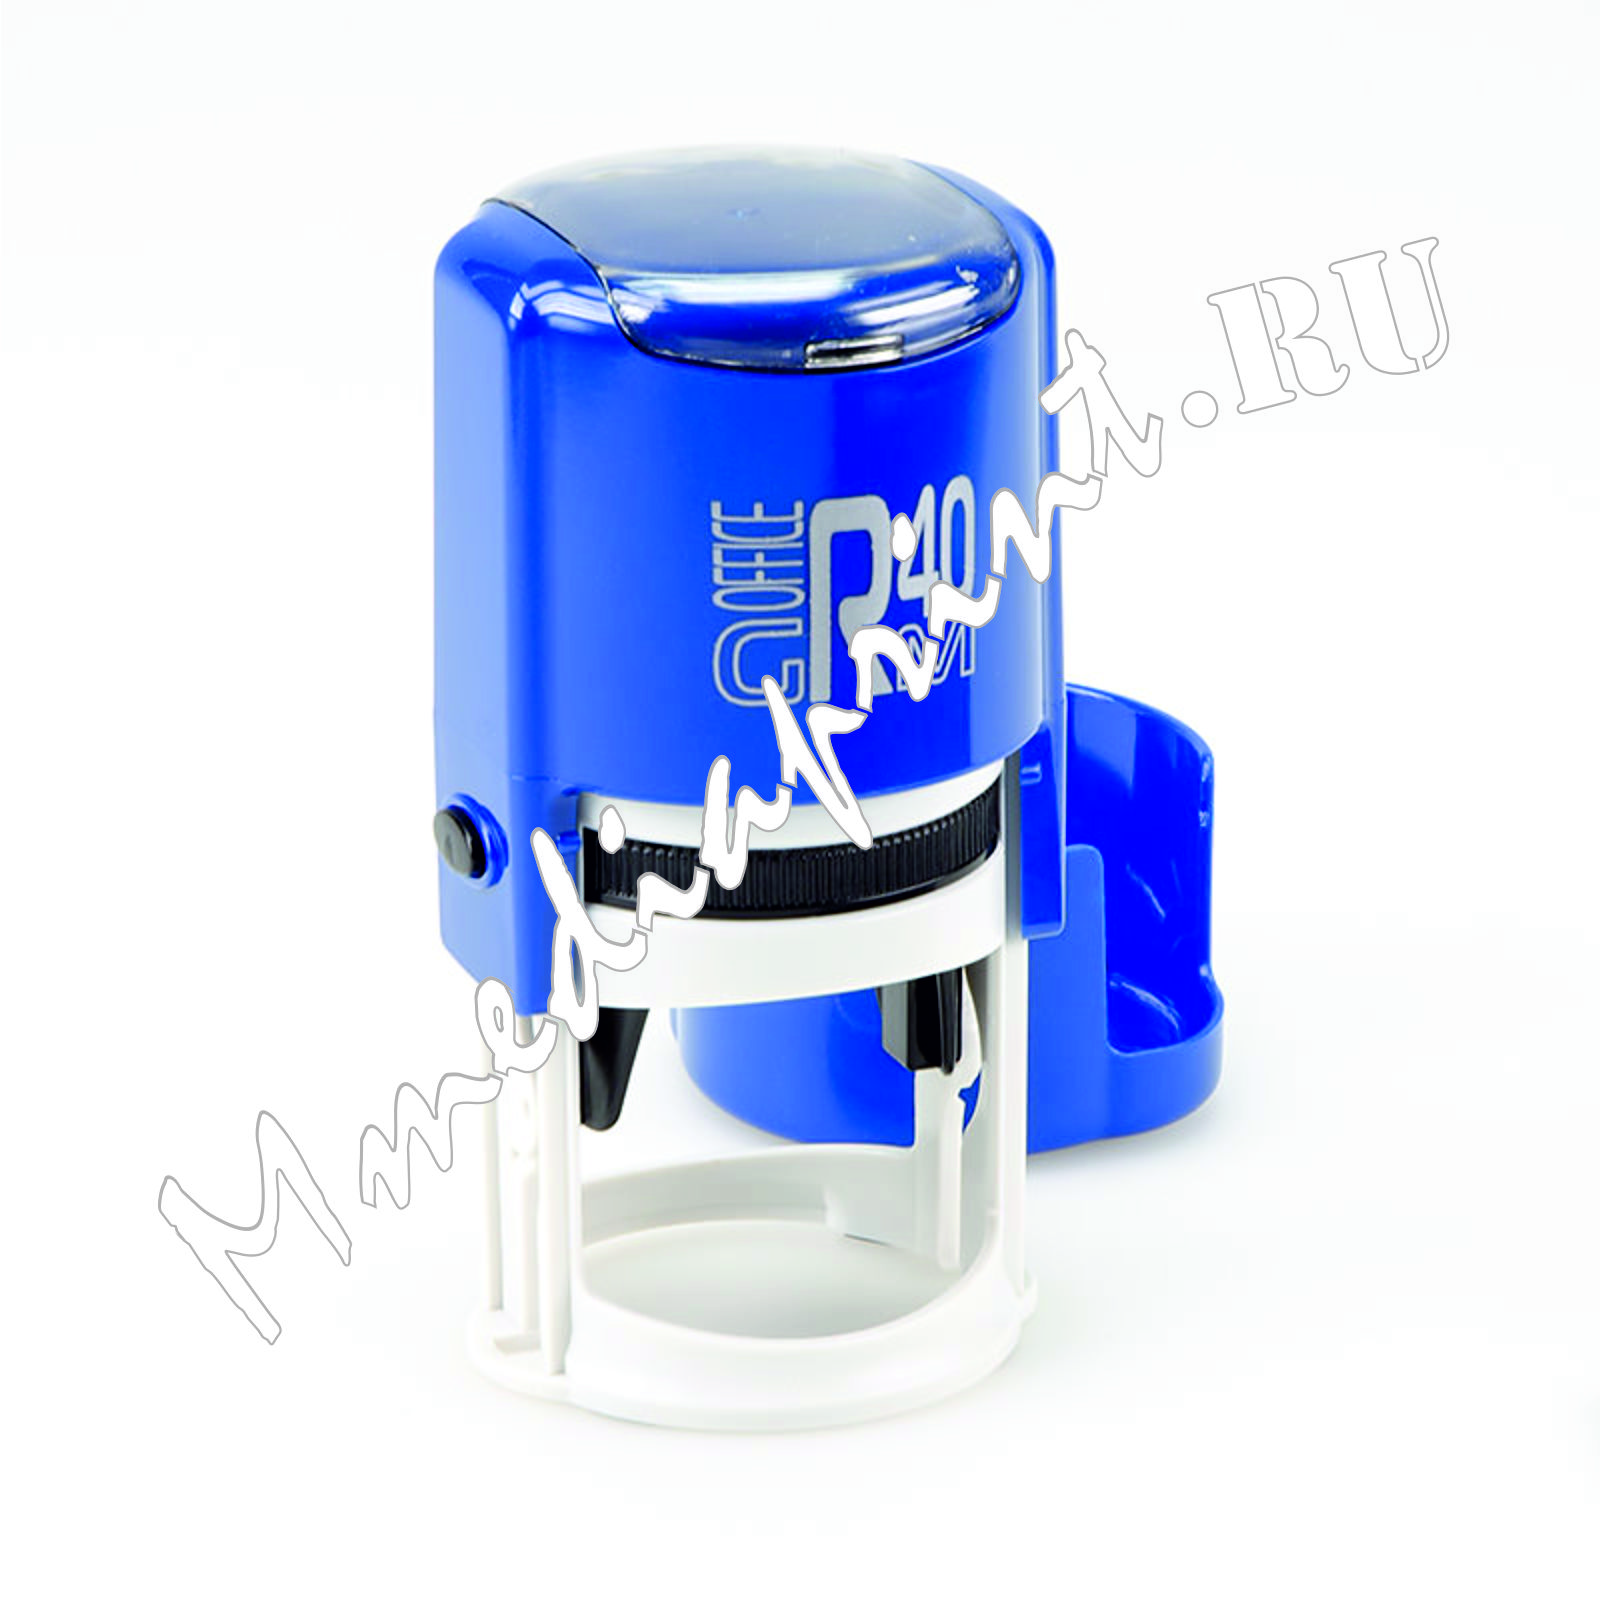 Автоматическая оснастка для печати с защитным боксом цвет Синяя глянцевый диаметр 40 мм.